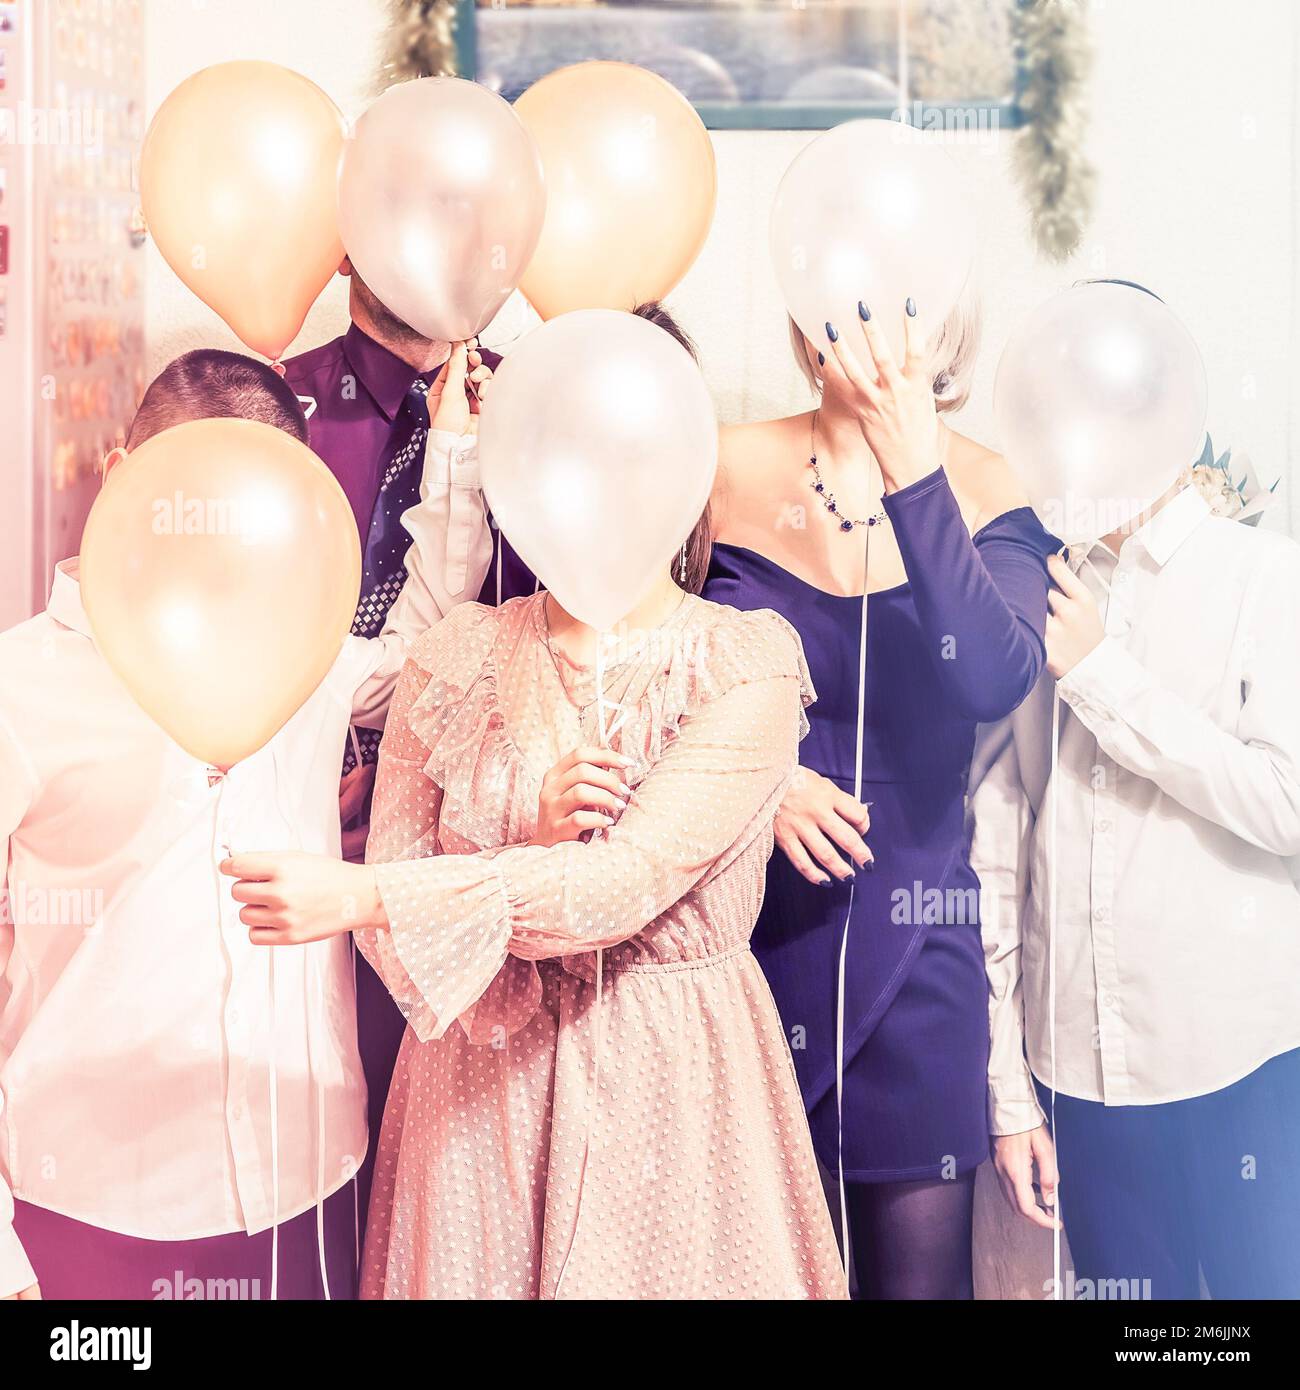 Une famille qui cache ses visages derrière les ballons. Photo de famille de vacances gaies. Banque D'Images